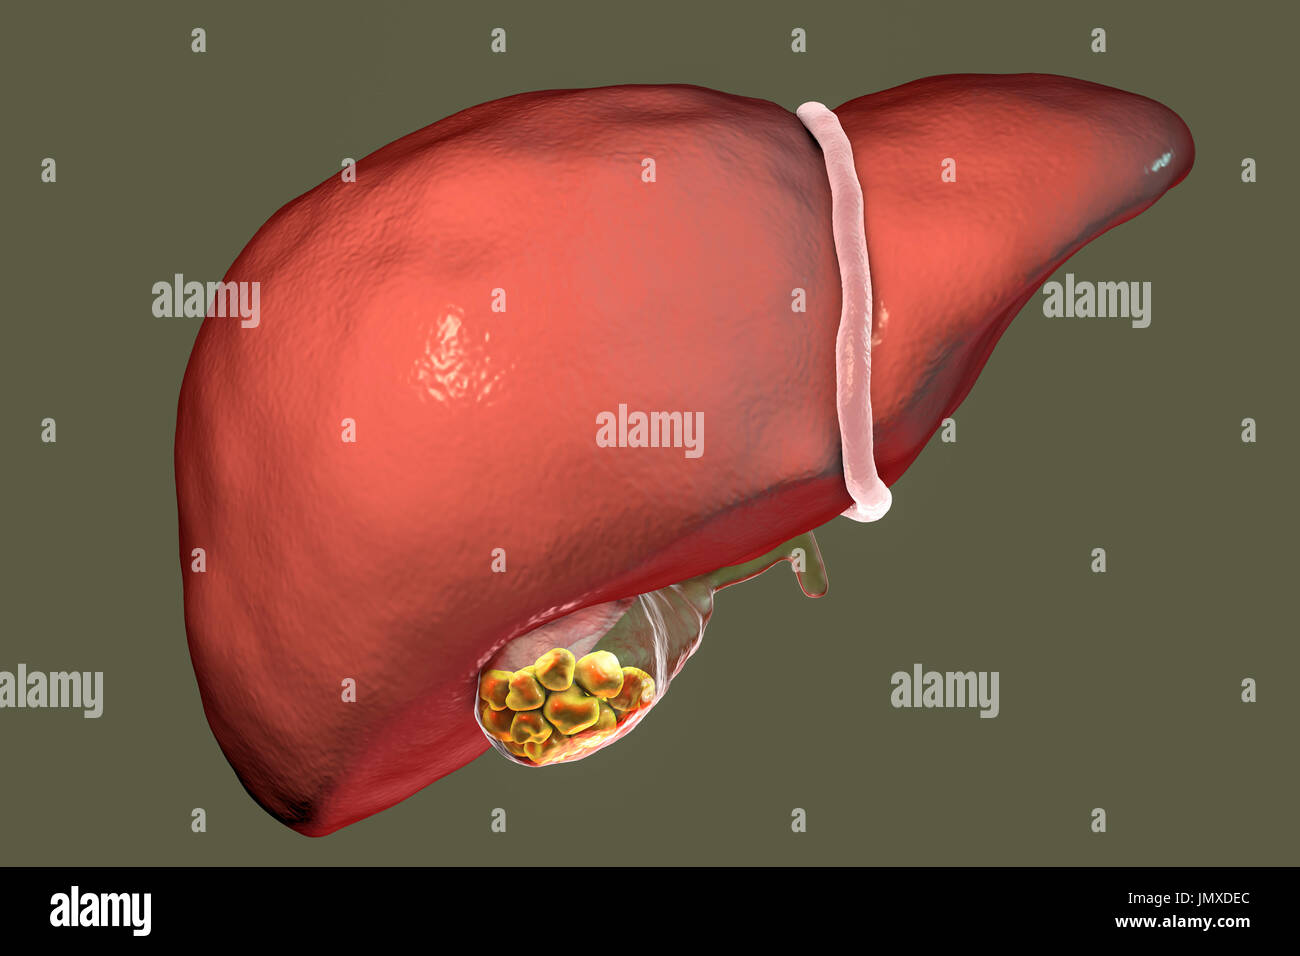 Los cálculos biliares. Ilustración que muestra el hígado y la vesícula  biliar con cálculos biliares. La vesícula biliar almacena bilis, un líquido  digestivo que es producida por el hígado (encima de la